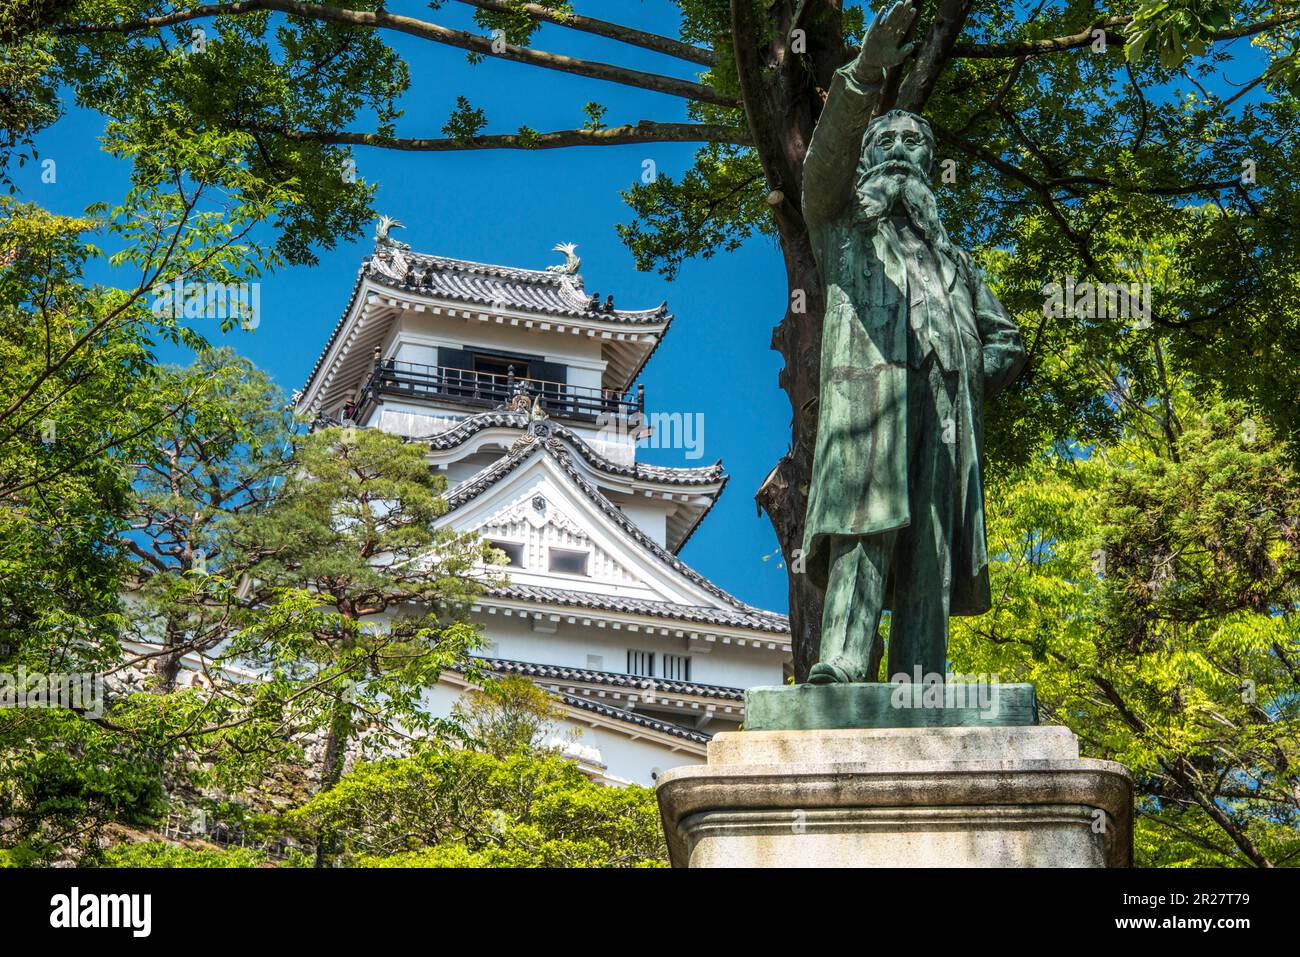 Taisuke itagaki statue and Kochi Castle Stock Photo